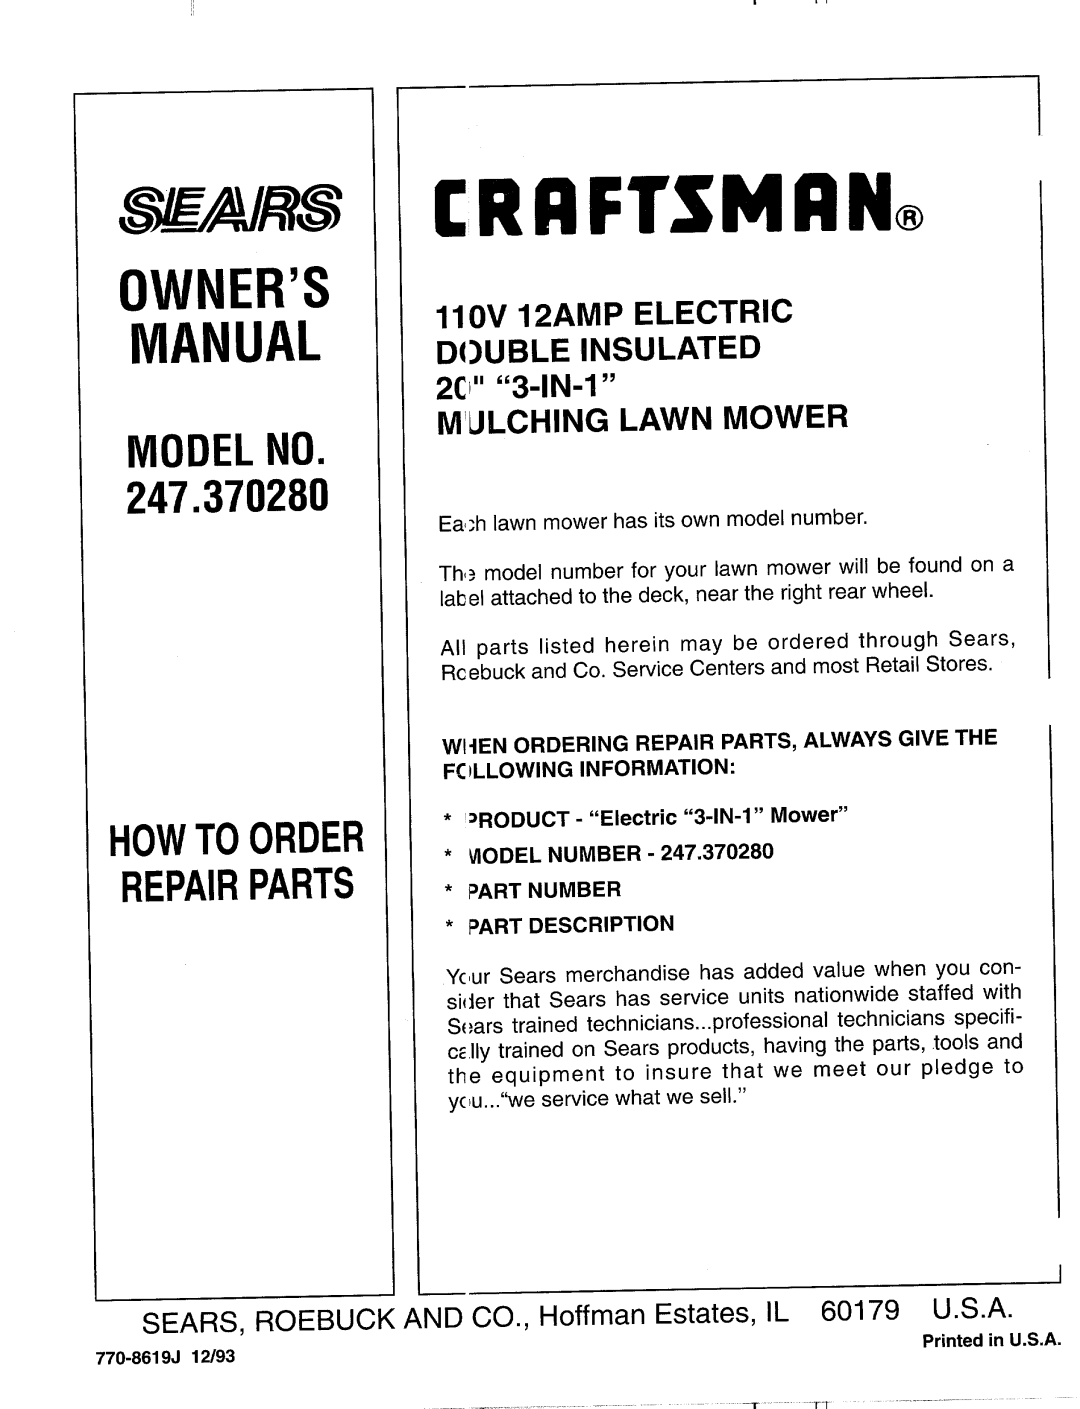 Sears 247.37028 manual 